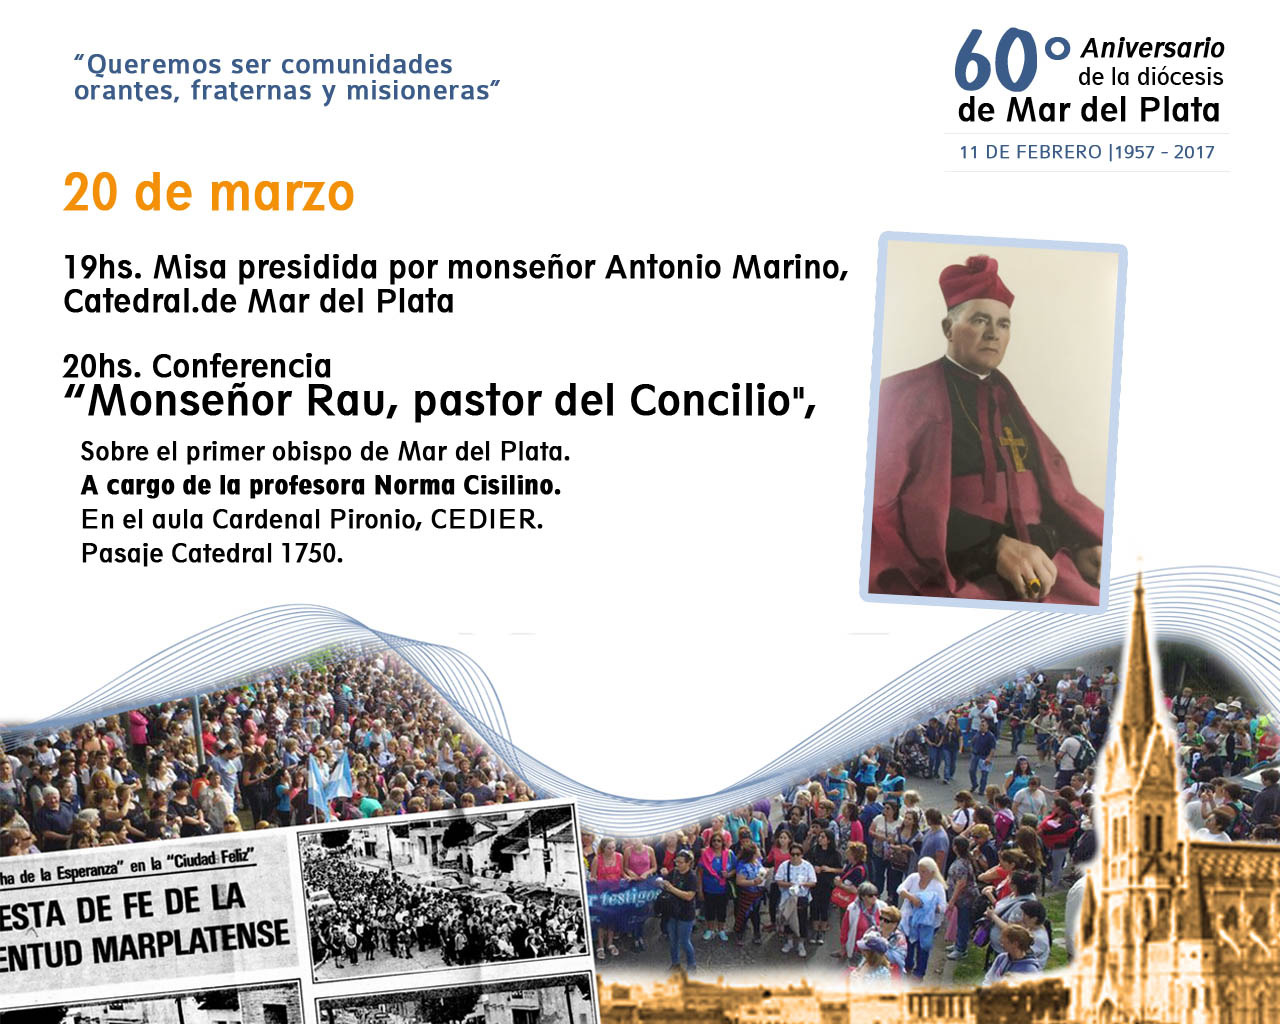 1° charla por la celebración del 60º Aniversario de la diócesis de Mar del Plata